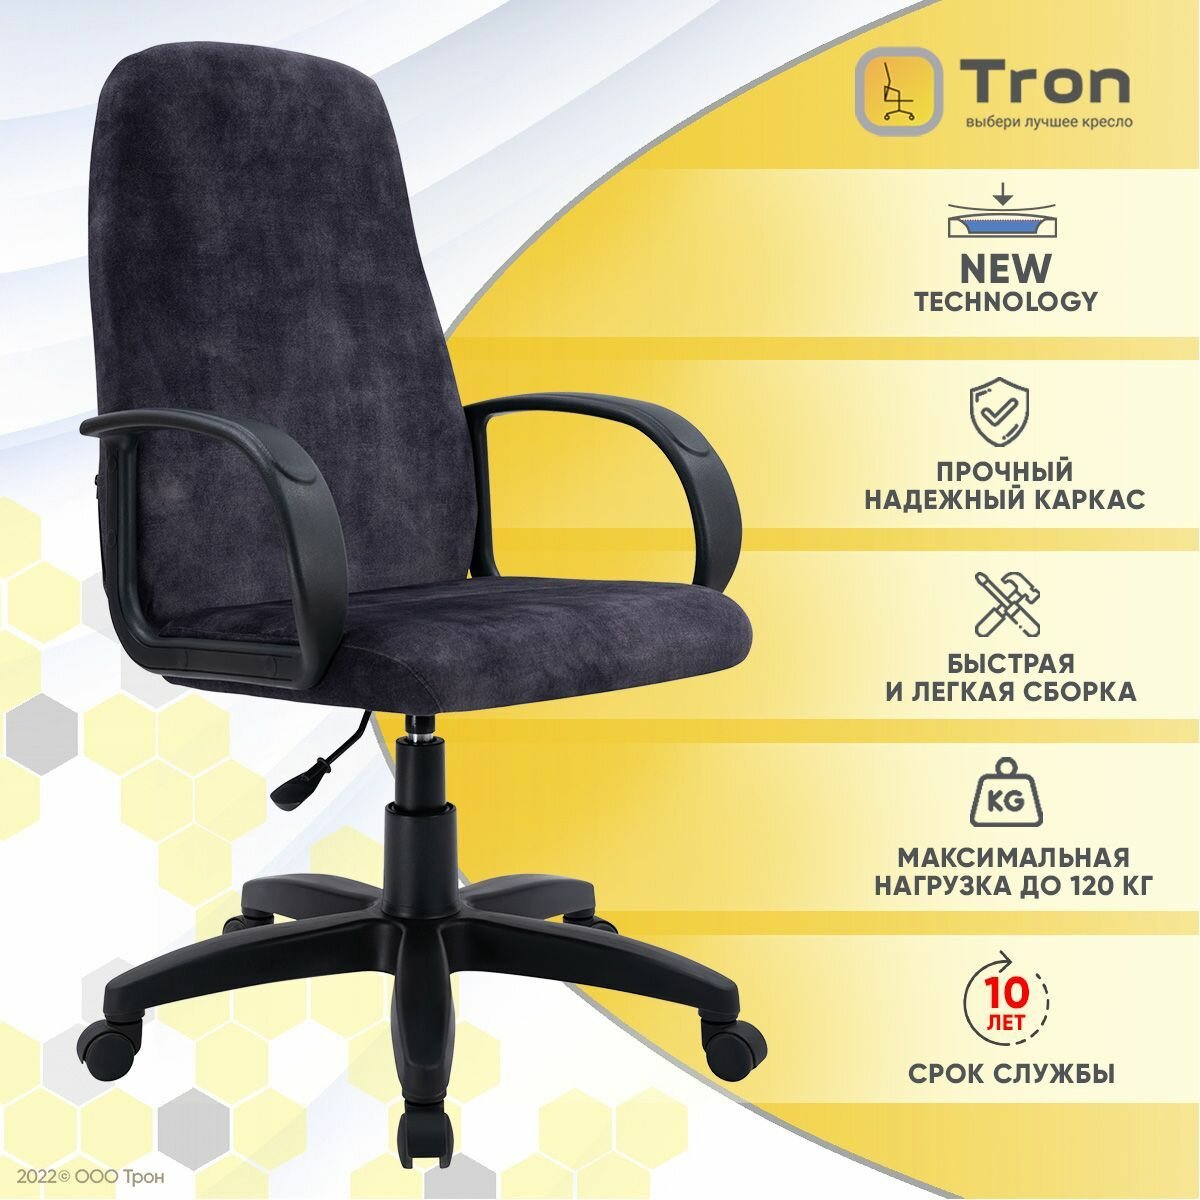 Кресло компьютерное офисное Tron C1 велюр RIO темно-серый Standard